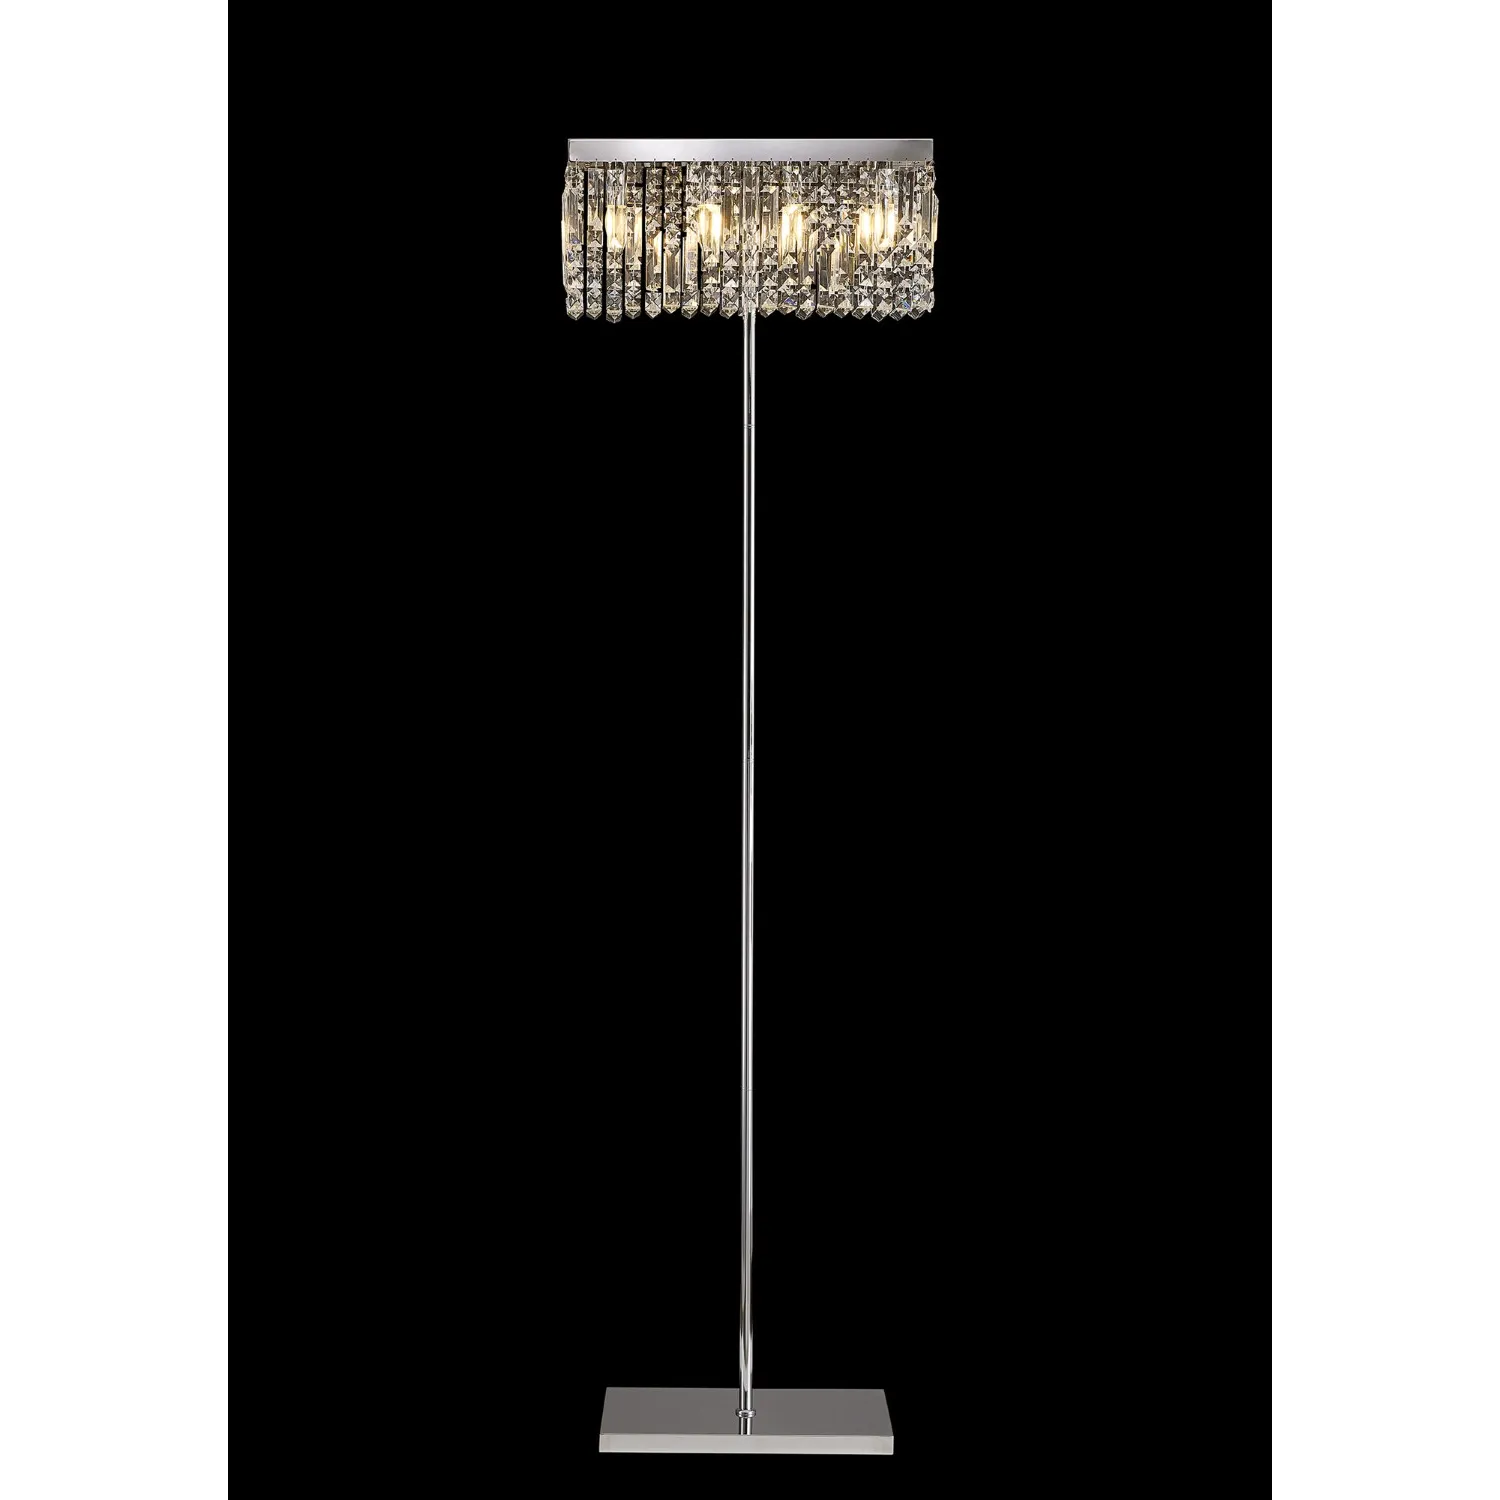 Boreham 50x15cm Rectangular Floor Lamp, 4 Light E14, Polished Chrome Crystal